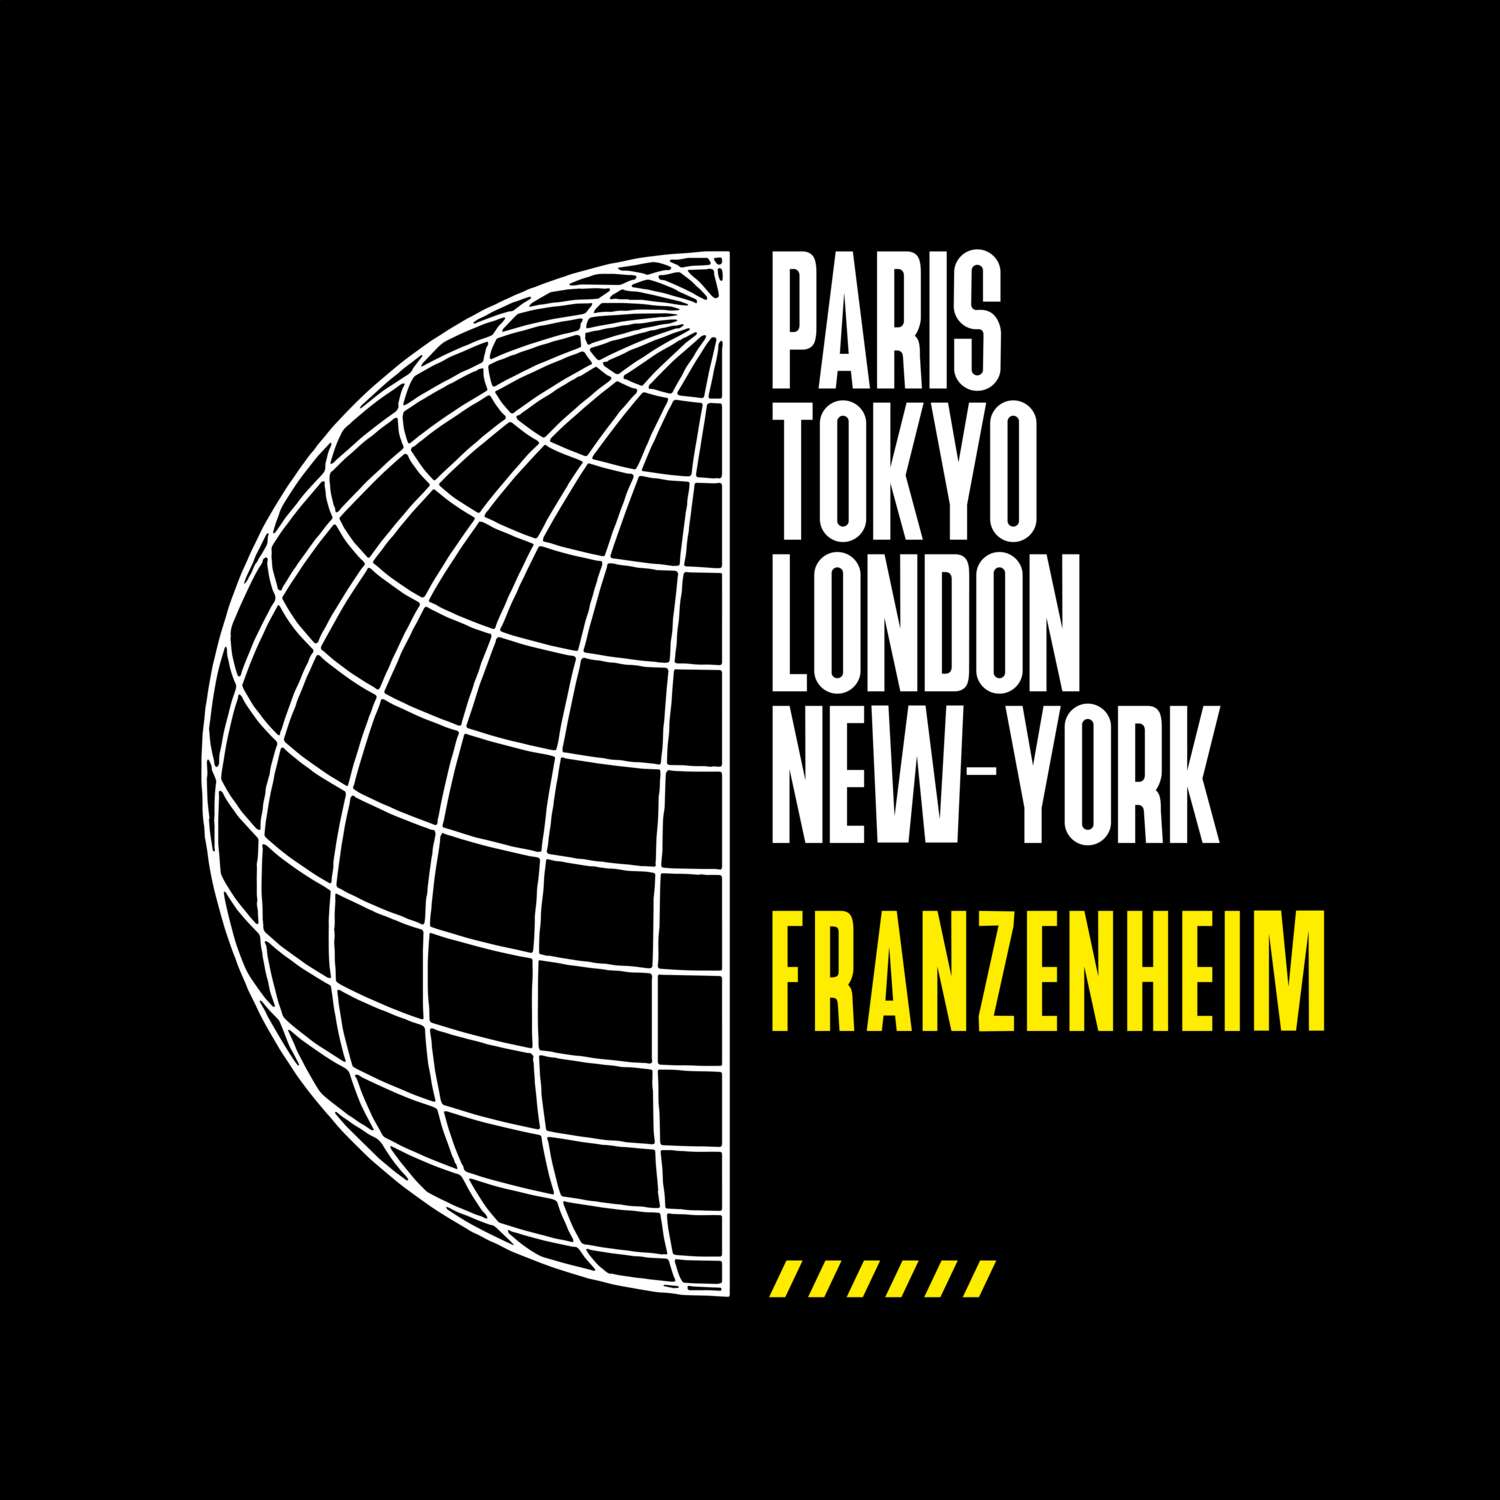 Franzenheim T-Shirt »Paris Tokyo London«